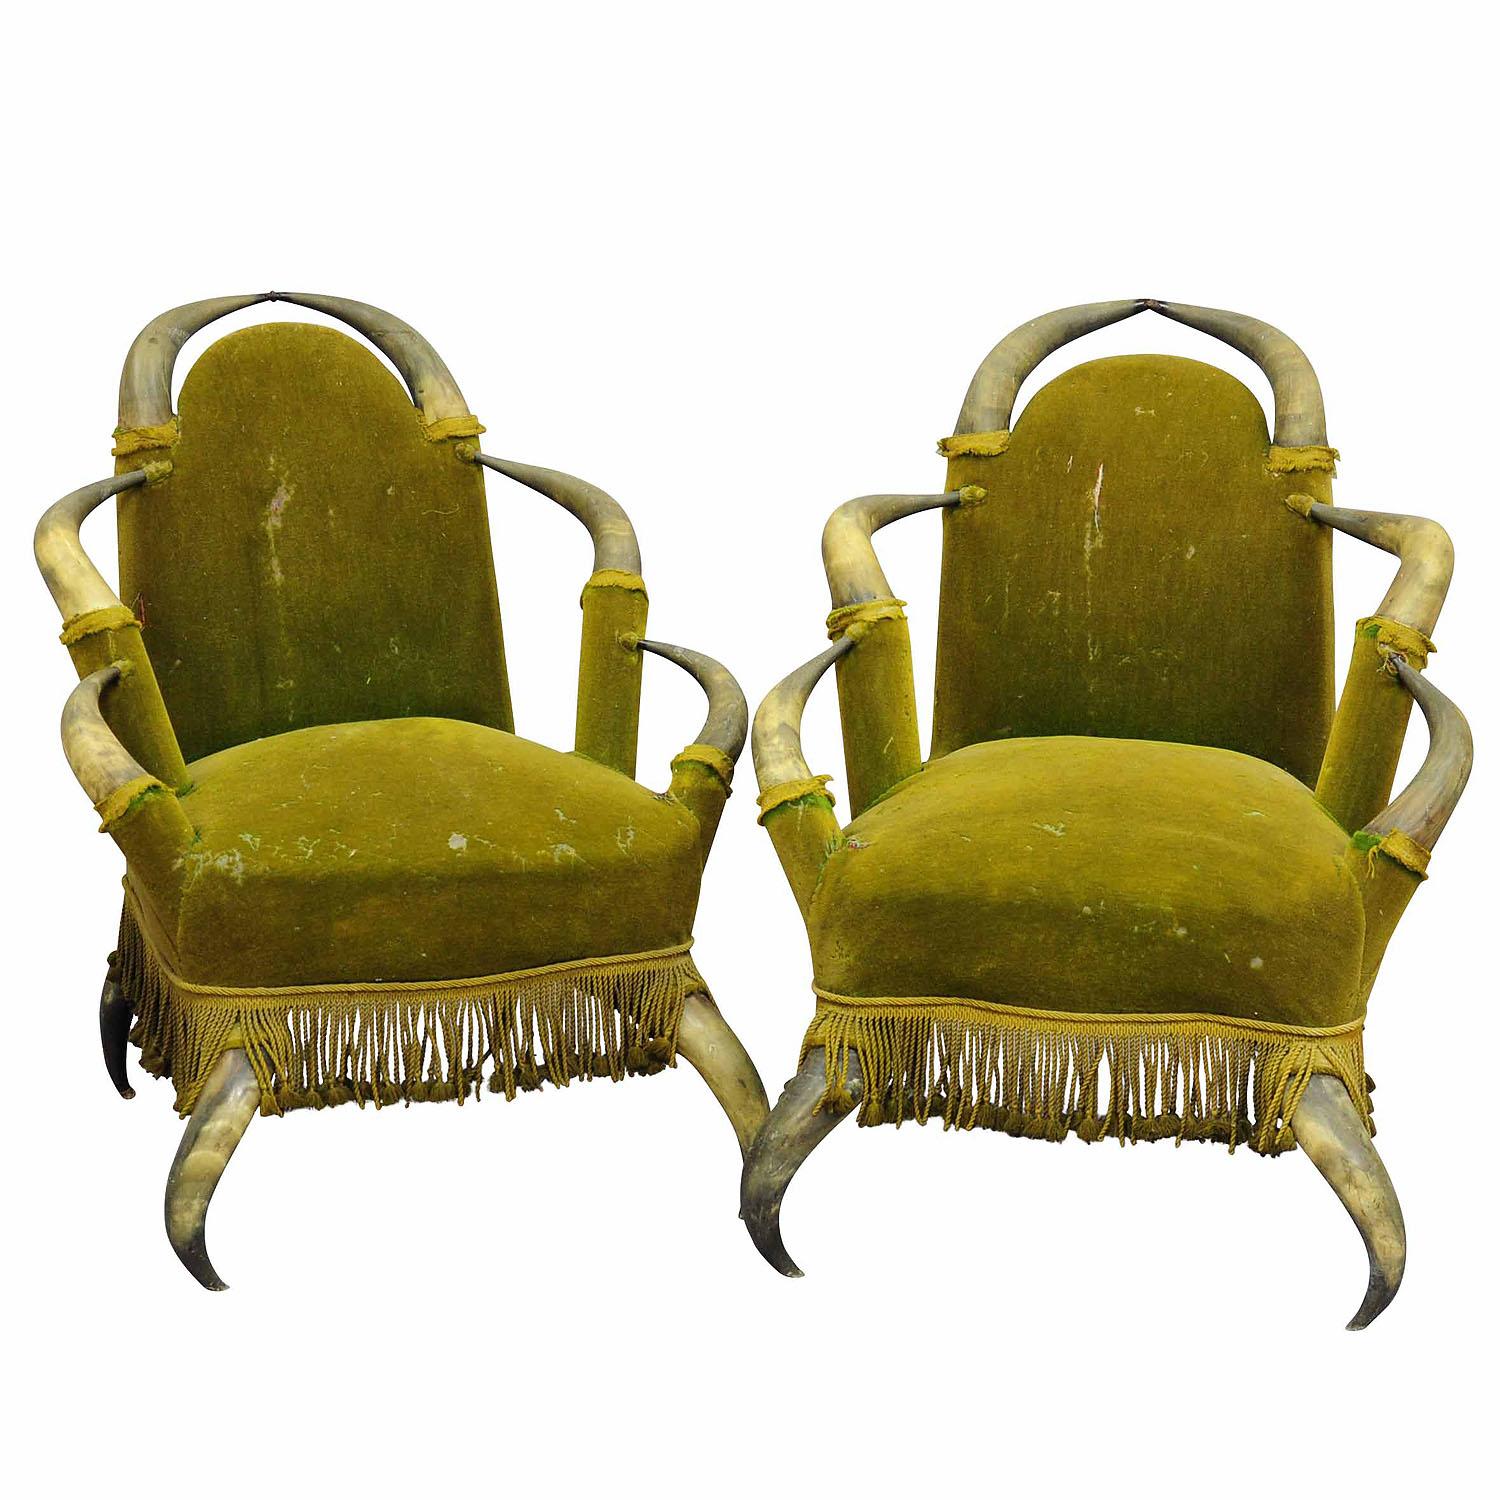 Paire de chaises anciennes en corne de taureau Autriche 1870

Paire de chaises anciennes en corne de taureau, provenant d'une villa noble en Autriche. Les sièges sont en velours vert antique. Les chaises sont en état d'origine non restauré, le tissu